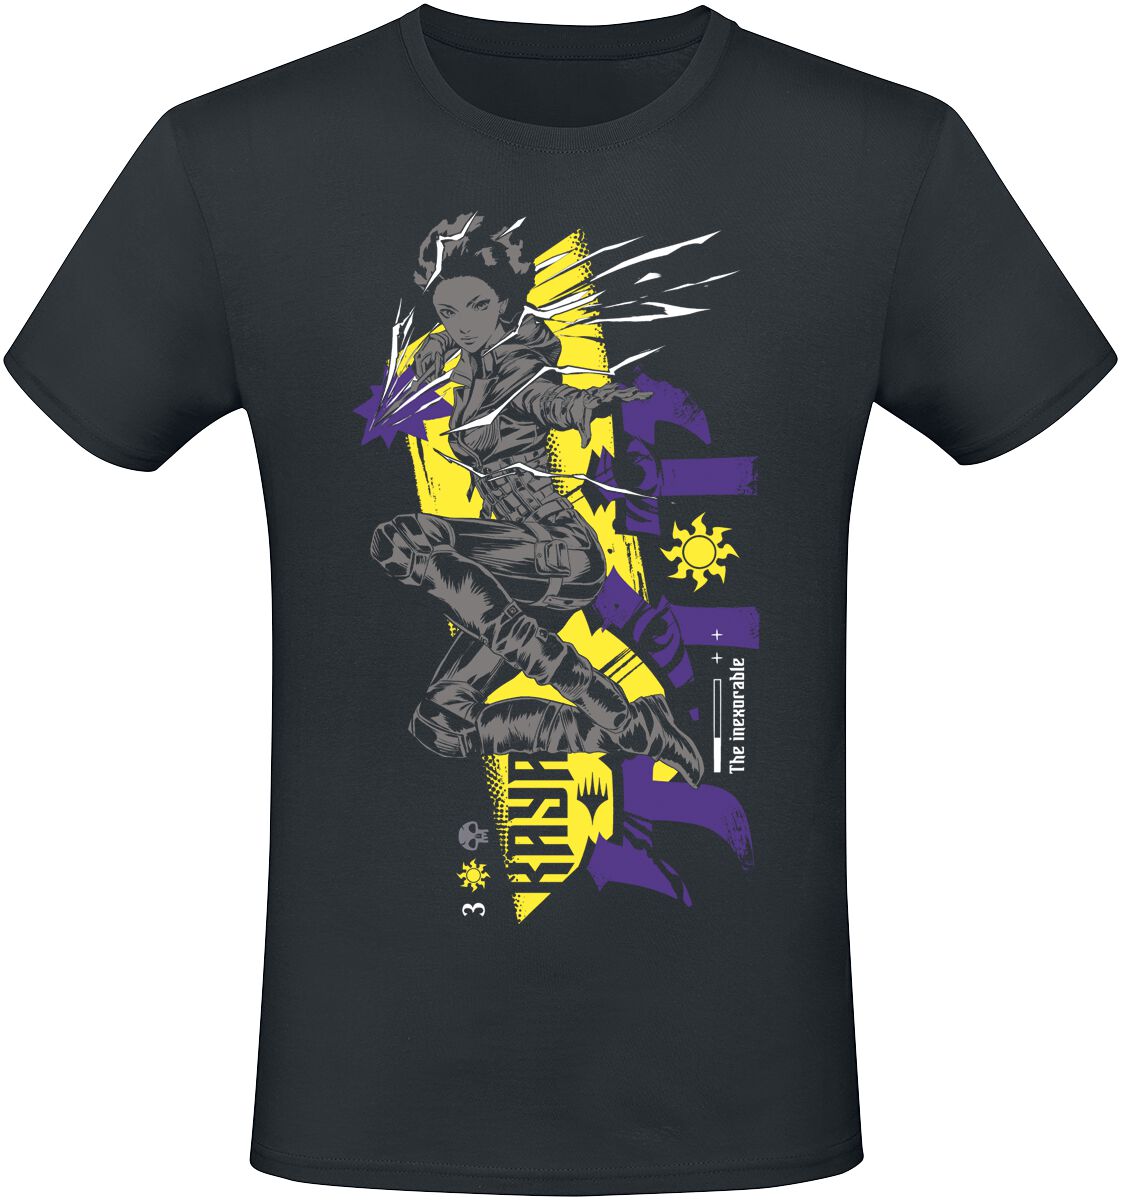 Magic: The Gathering - Gaming T-Shirt - Kaya - S bis XXL - für Männer - Größe L - schwarz  - EMP exklusives Merchandise!